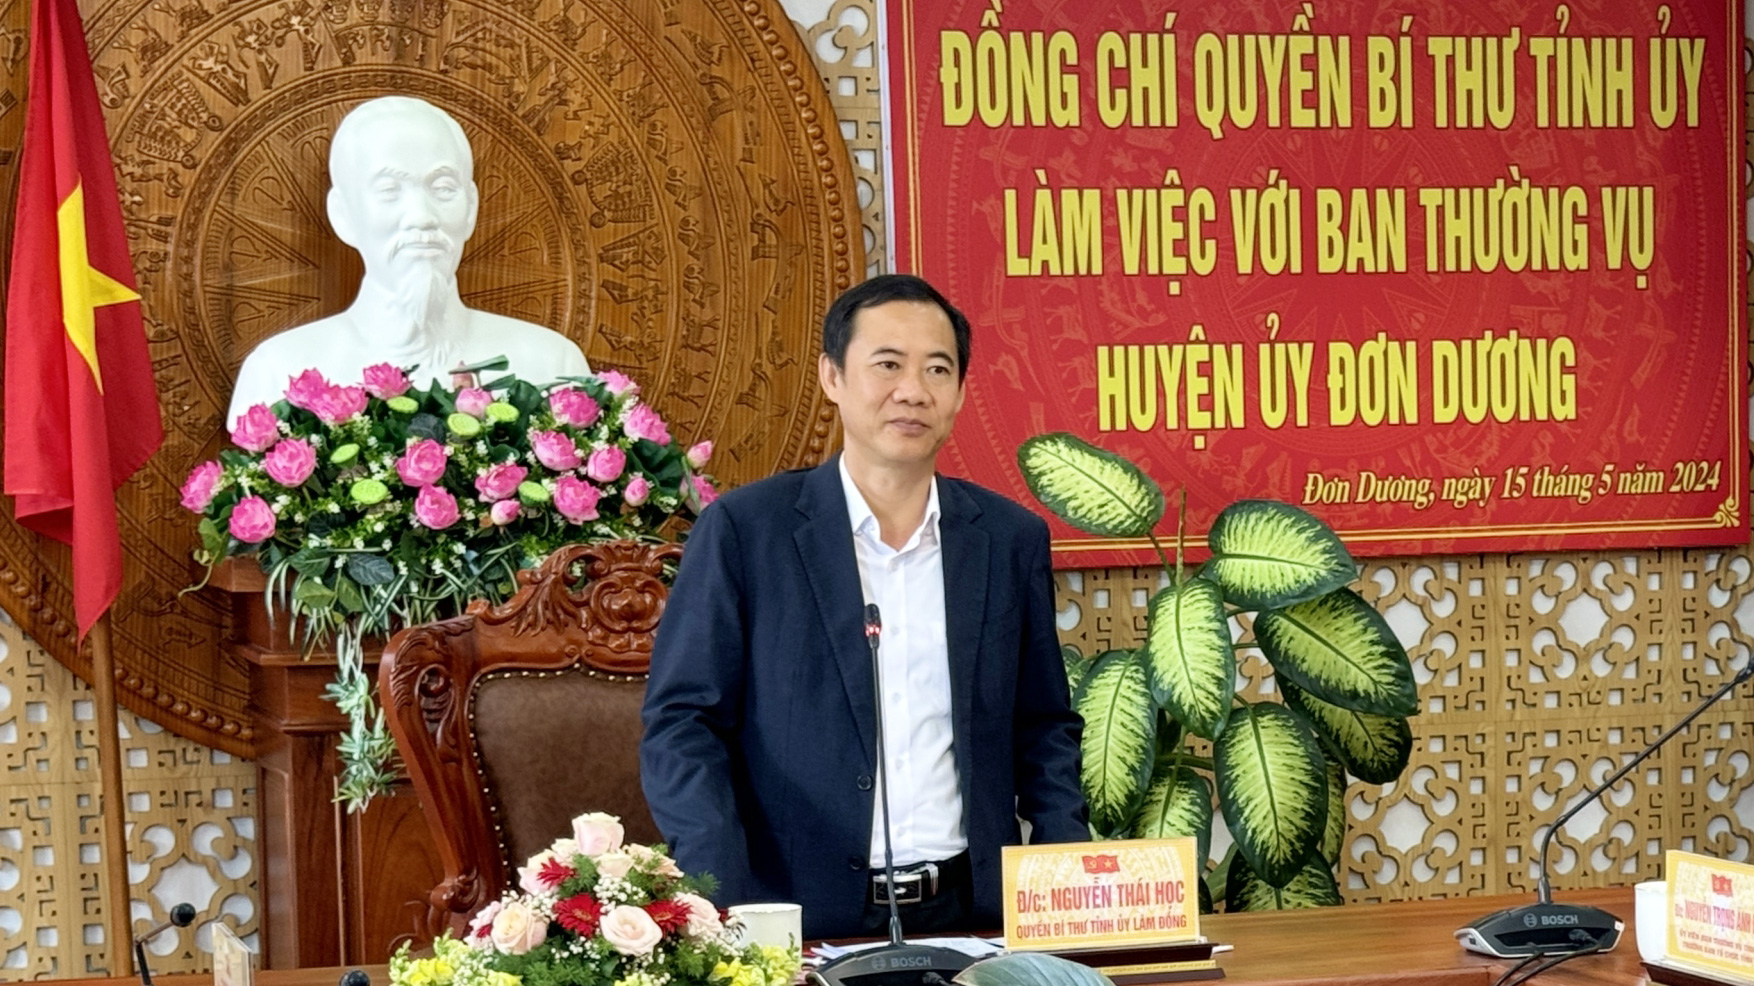 Kết luận buổi làm việc, đồng chí Quyền Bí thư Tỉnh ủy Nguyễn Thái Học nêu lên 4 nhóm nhiệm vụ trong thời gian tới cho huyện Đơn Dương